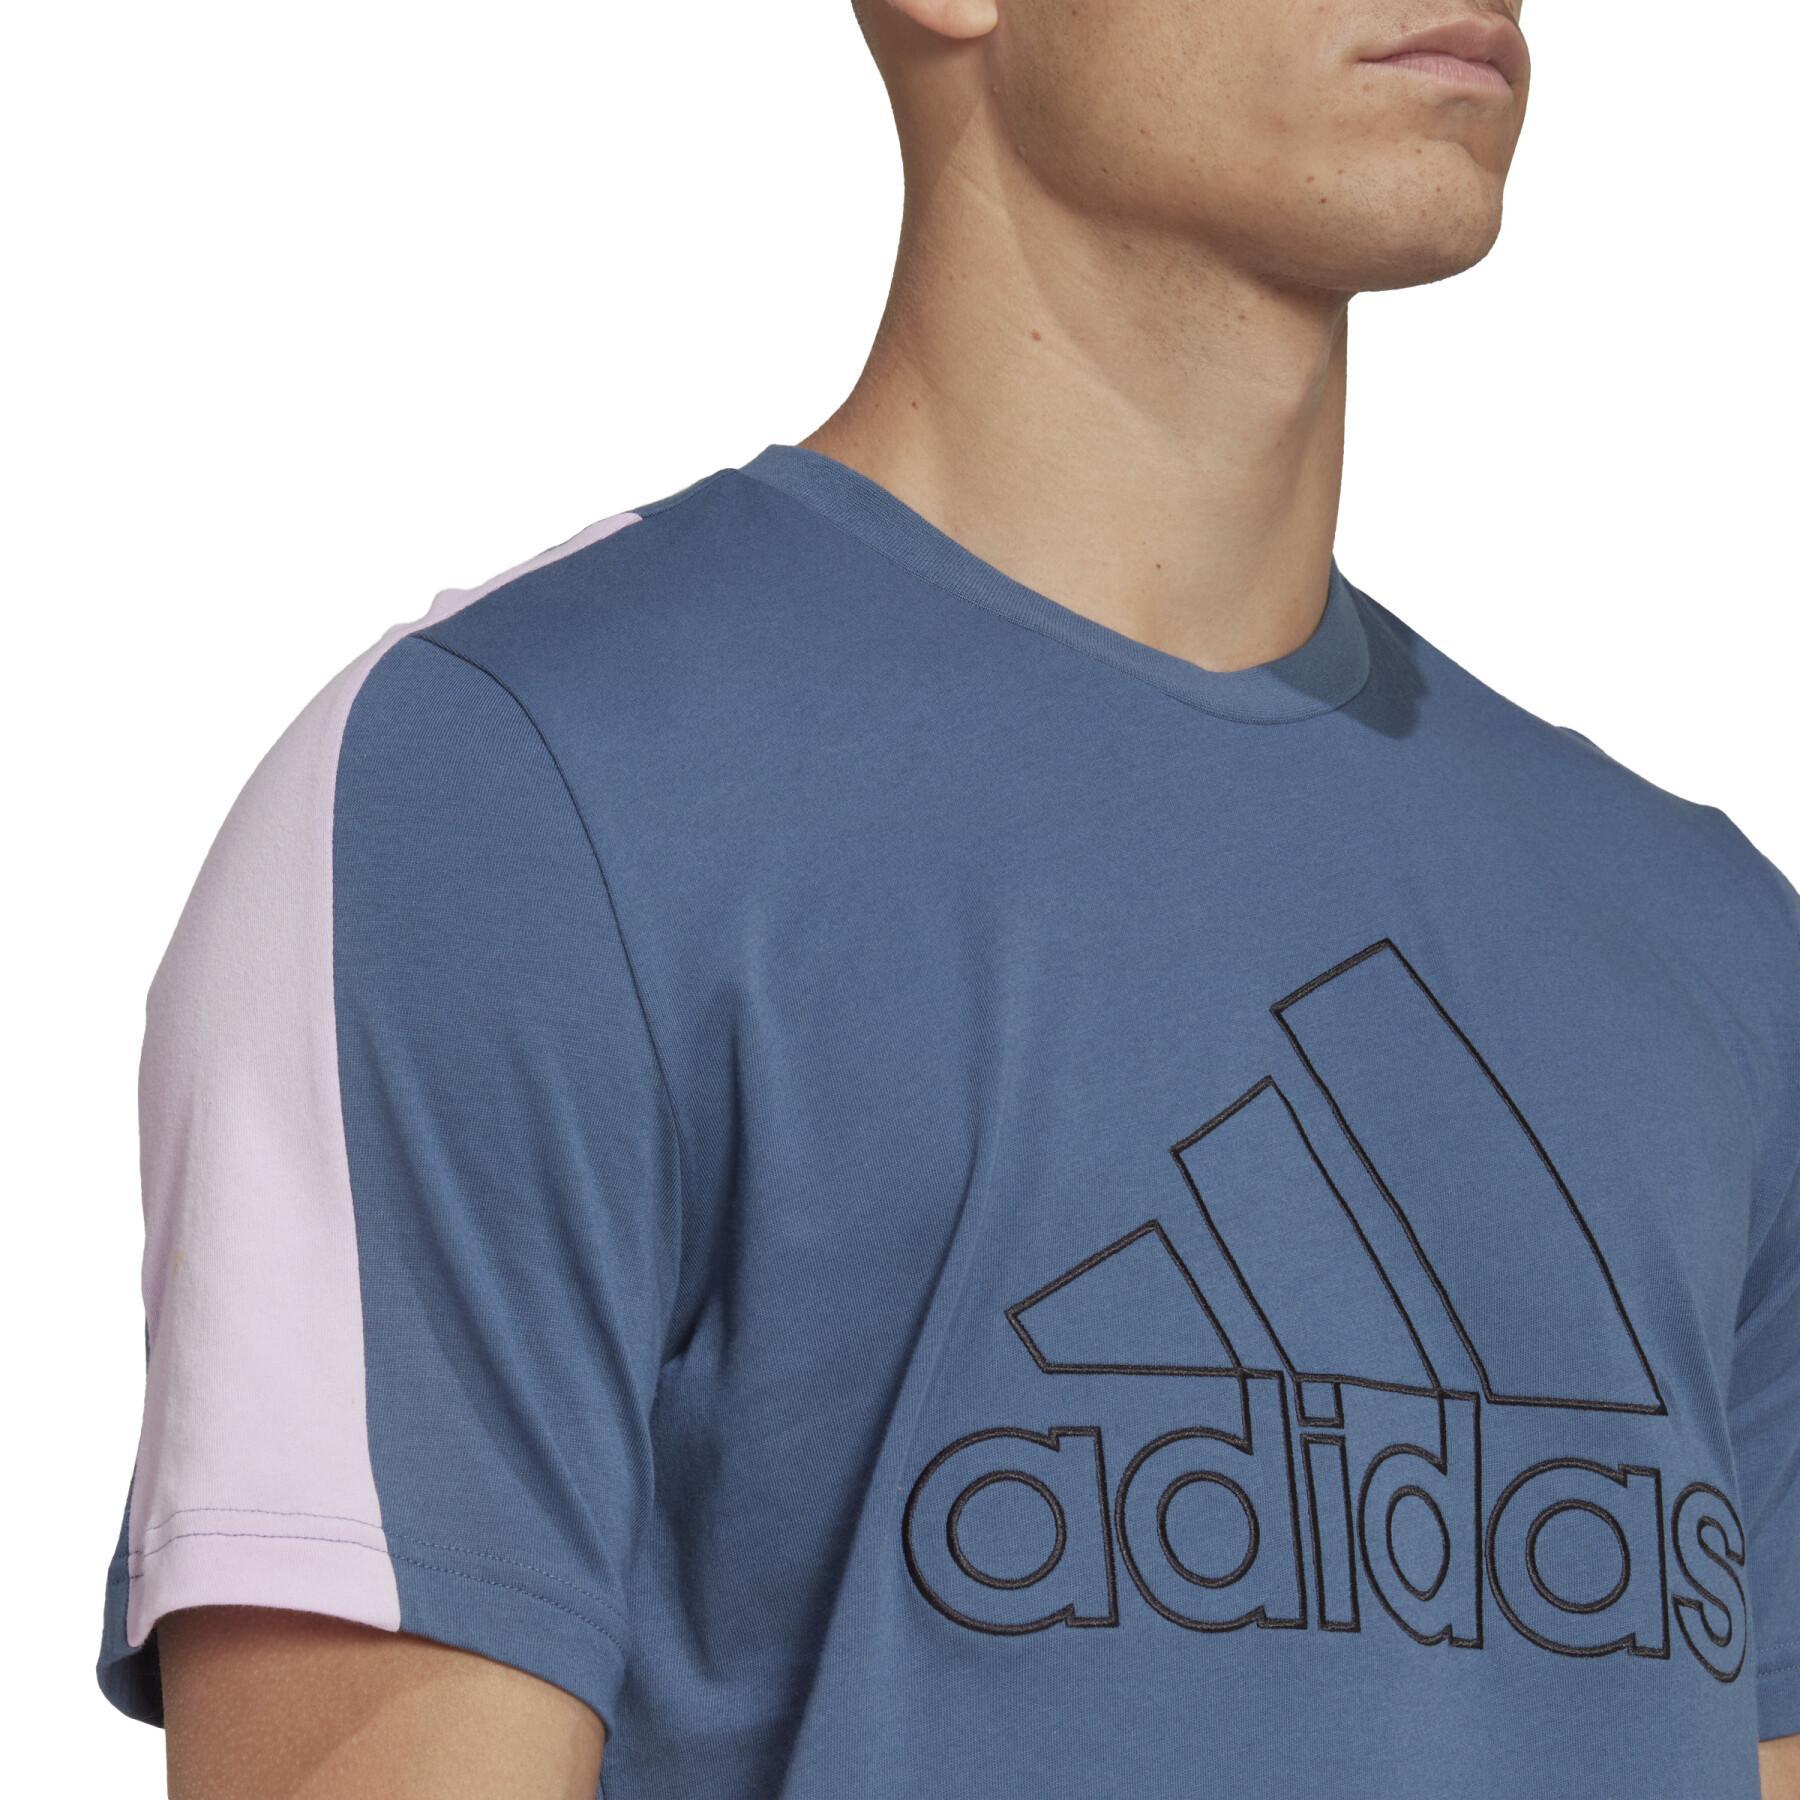 T-shirt med broderat sportmärke adidas Future Icons